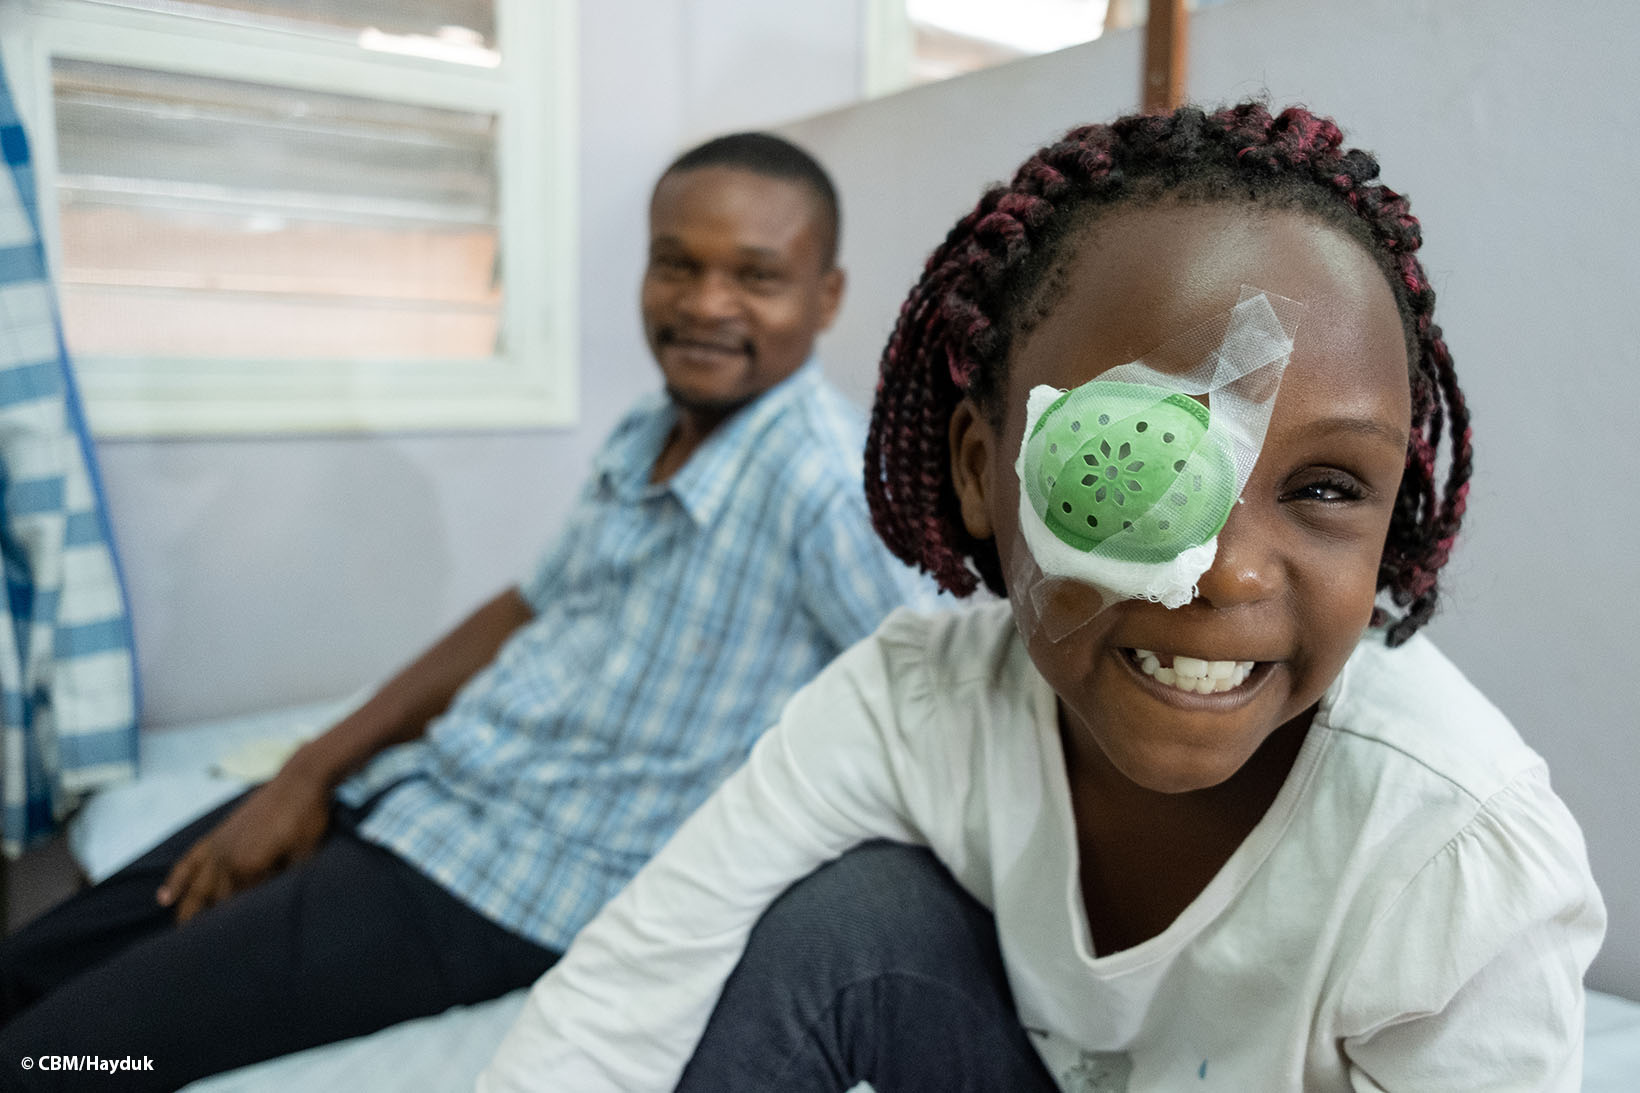 Ein Mädchen aus Uganda, das einen Augenverband trägt, lächelt in die Kamera. Hinter ihr sitzt ihr Vater, der ebenfalls lächelt.